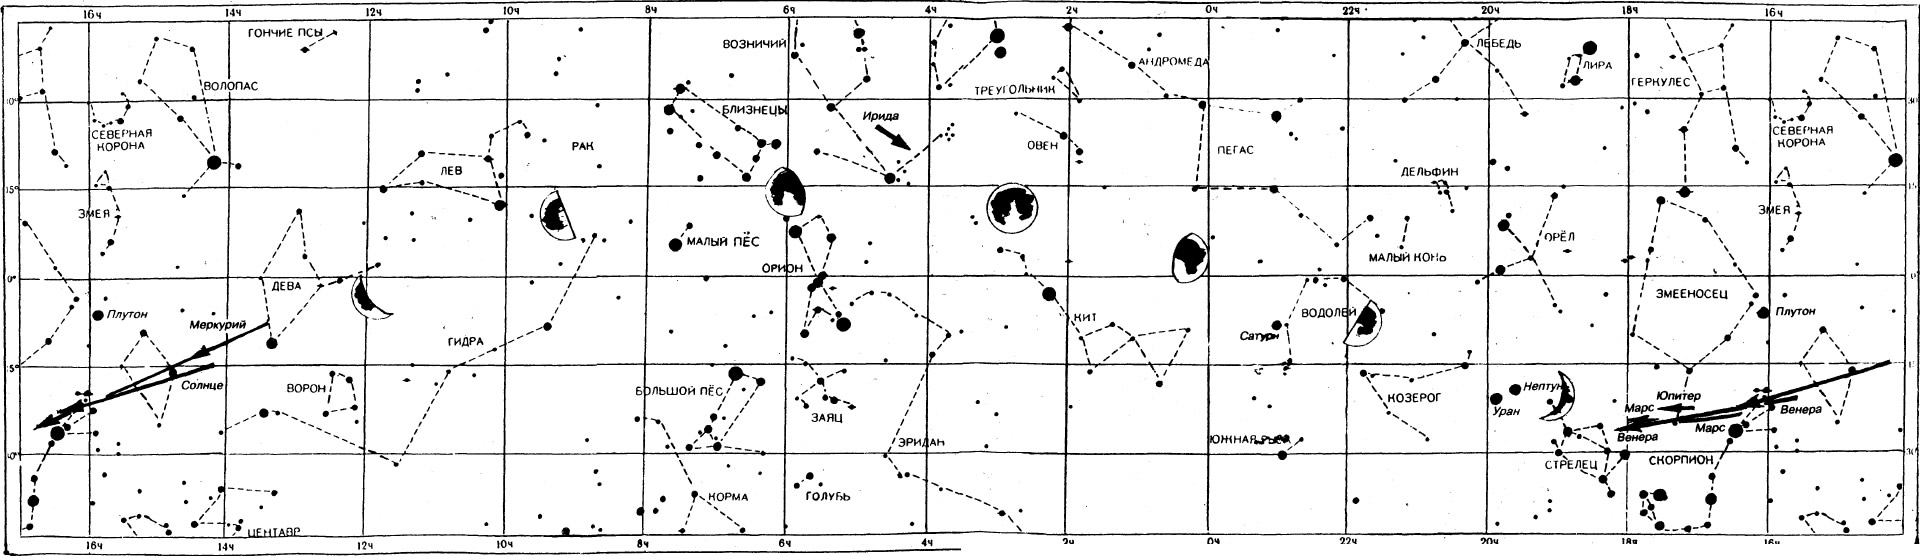 Звездная карта Ноябрь 1995